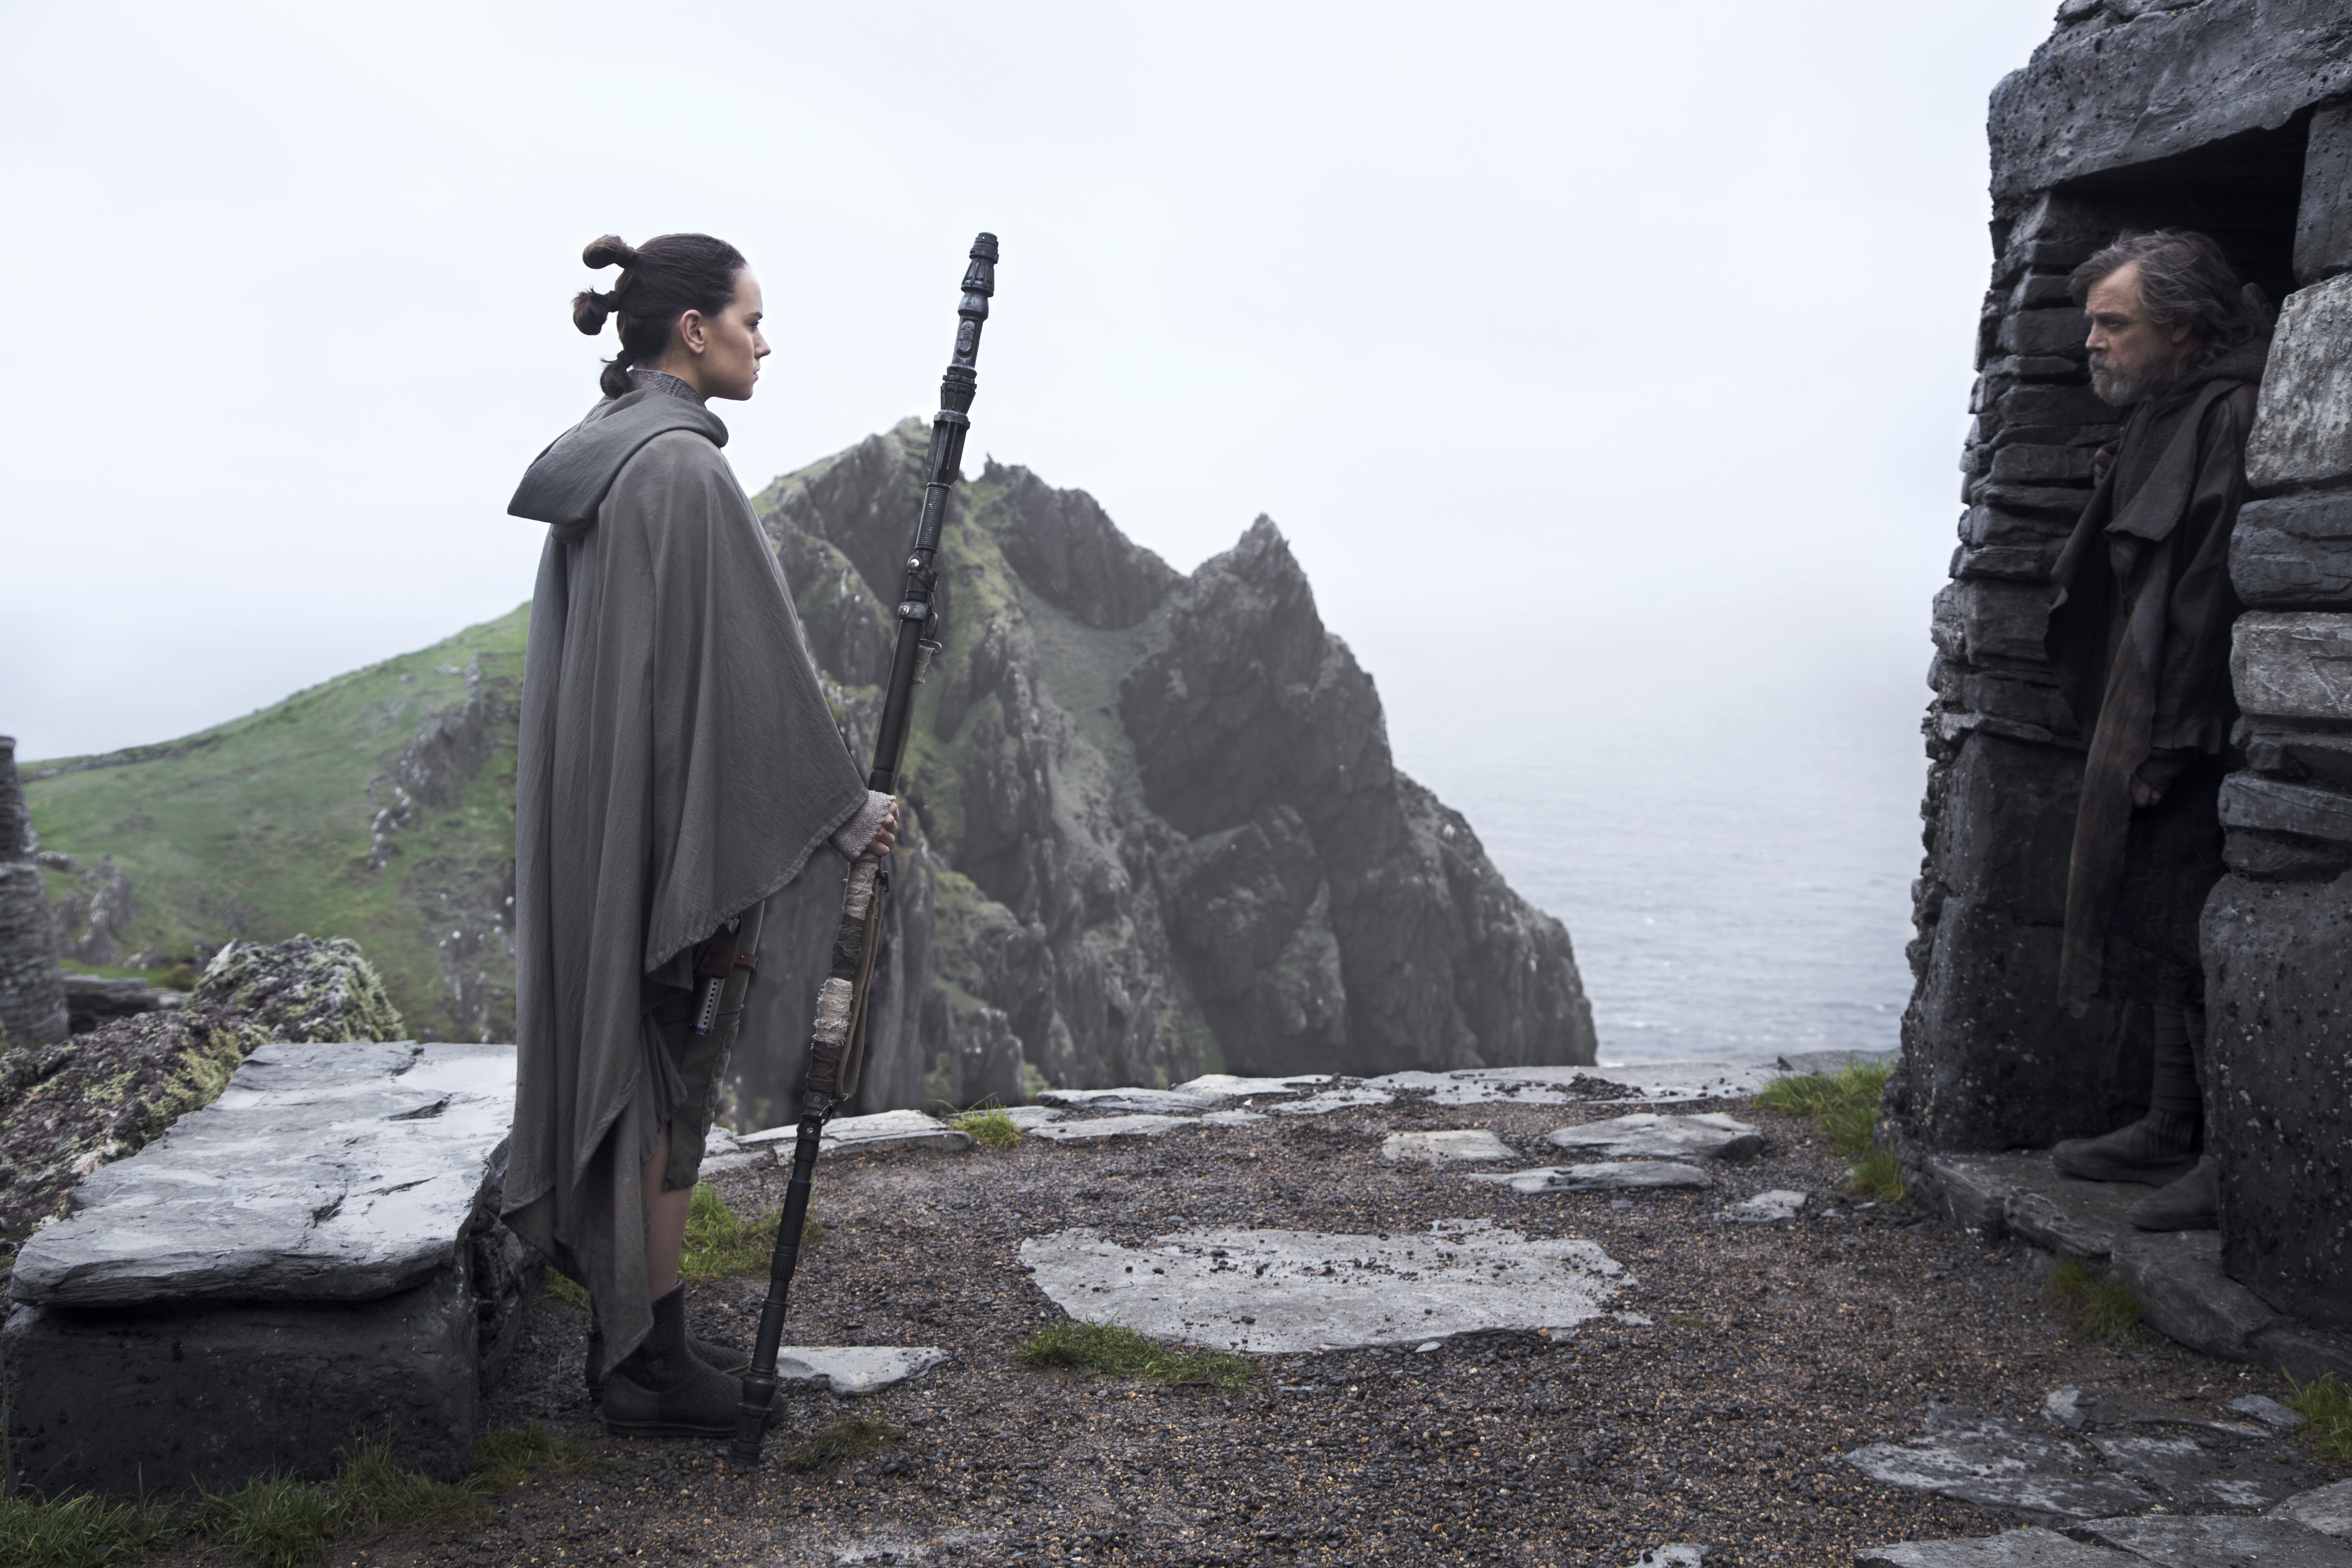 Star Wars: The Last Jedi - Rotten Tomatoes